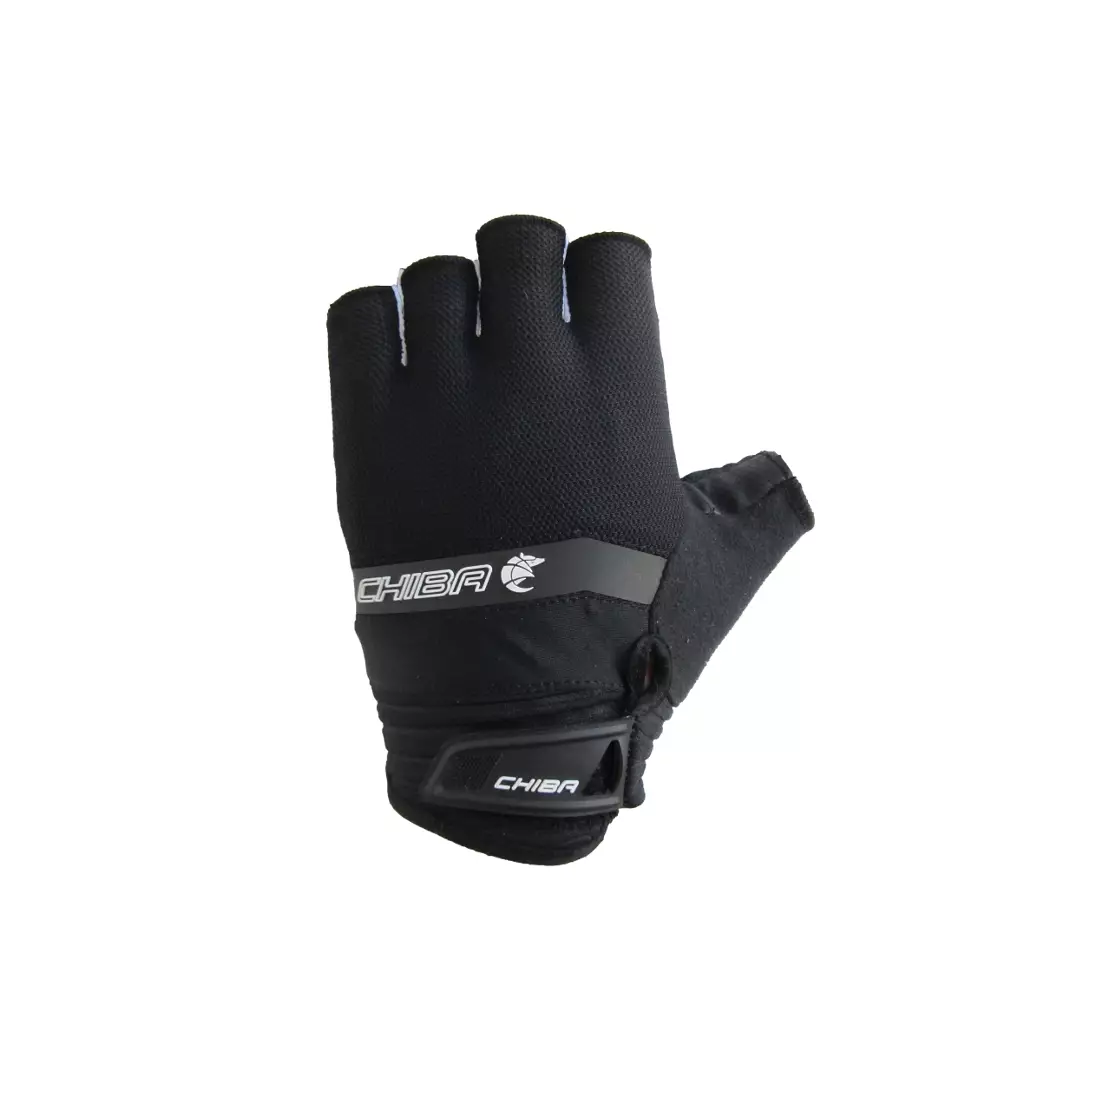 CHIBA AIR CRUISER cycling gloves, black